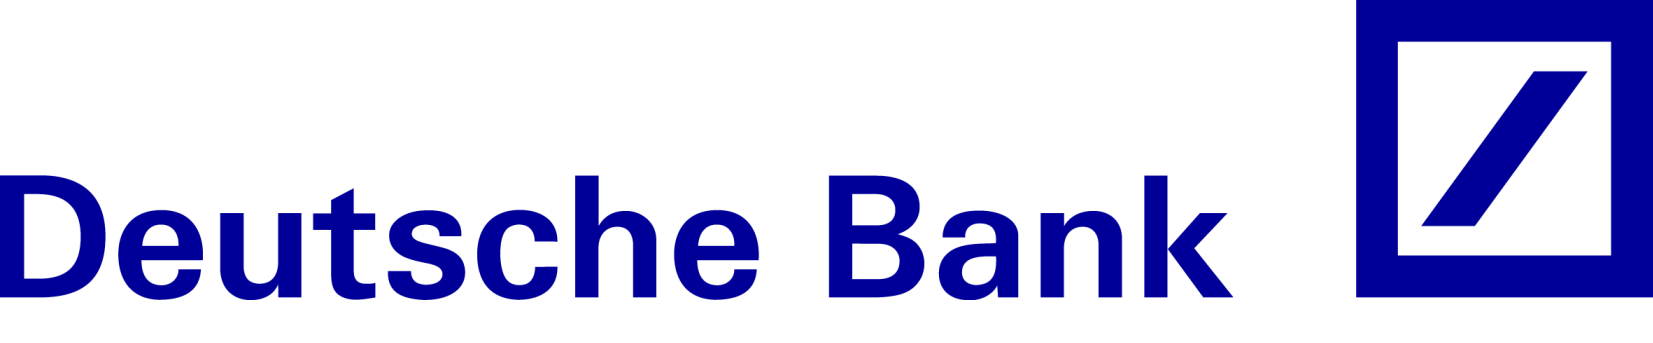 /dateien/pr55255,1276692053,logo deutschebank-212